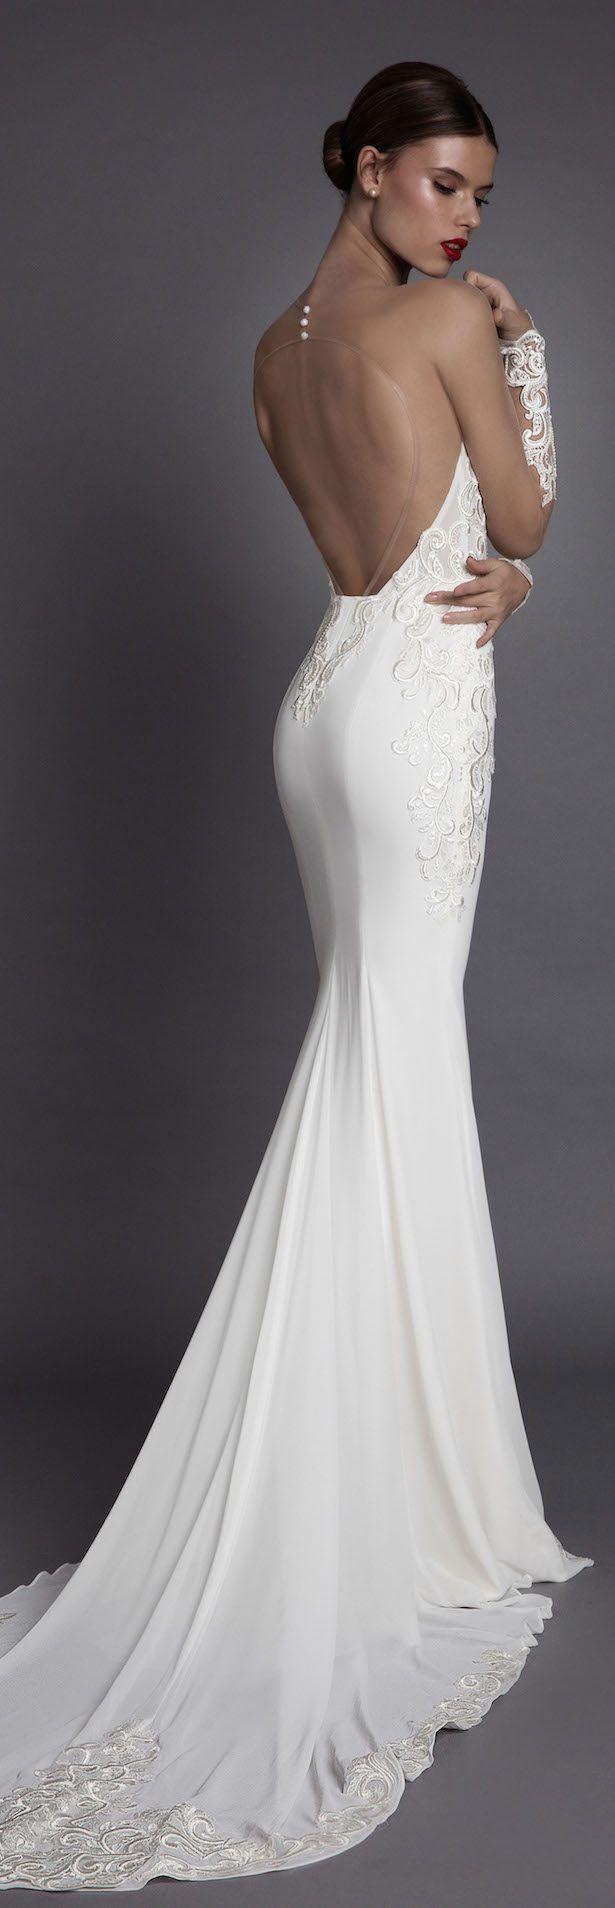 زفاف - Muse By Berta Wedding Dress